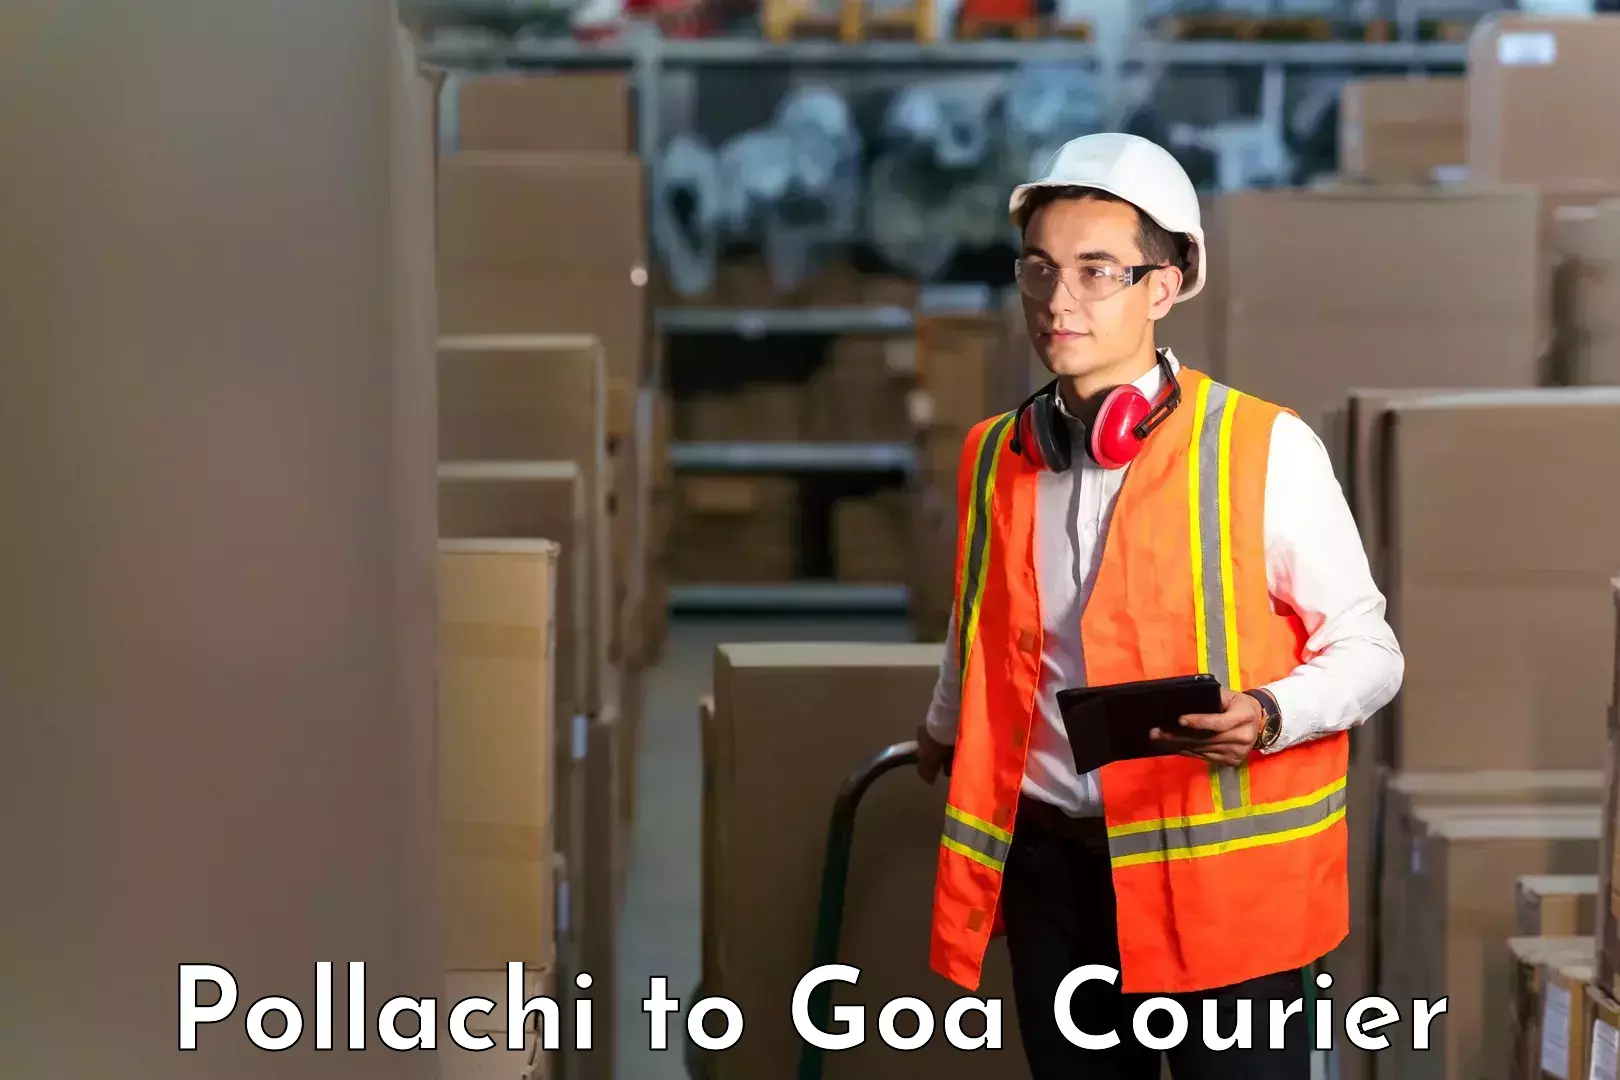 Advanced courier platforms Pollachi to NIT Goa